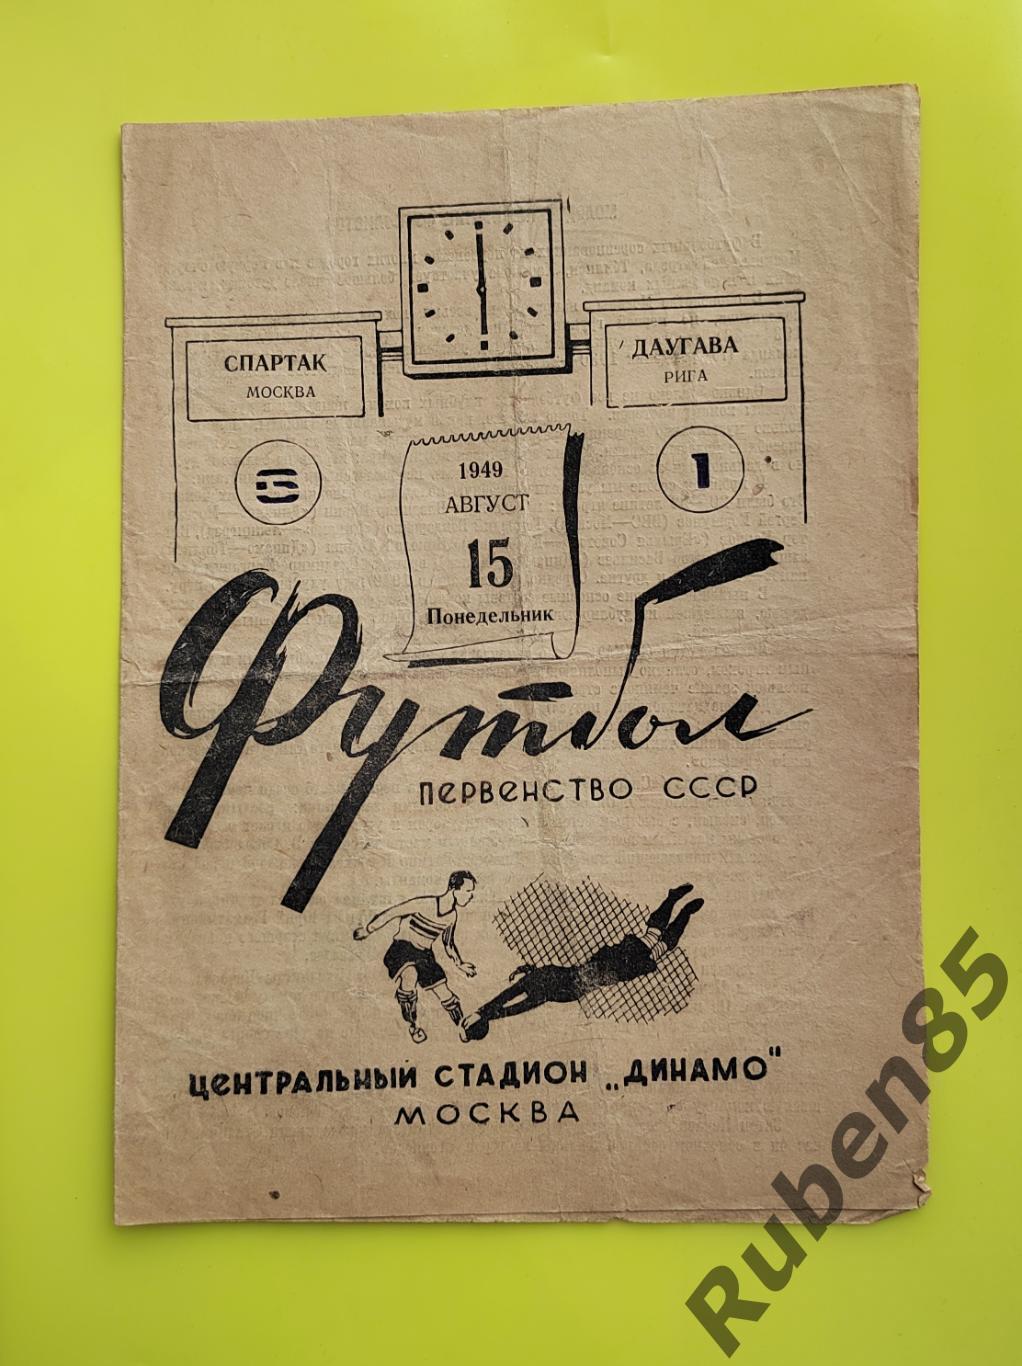 Программа Спартак Москва - Даугава Рига 1949